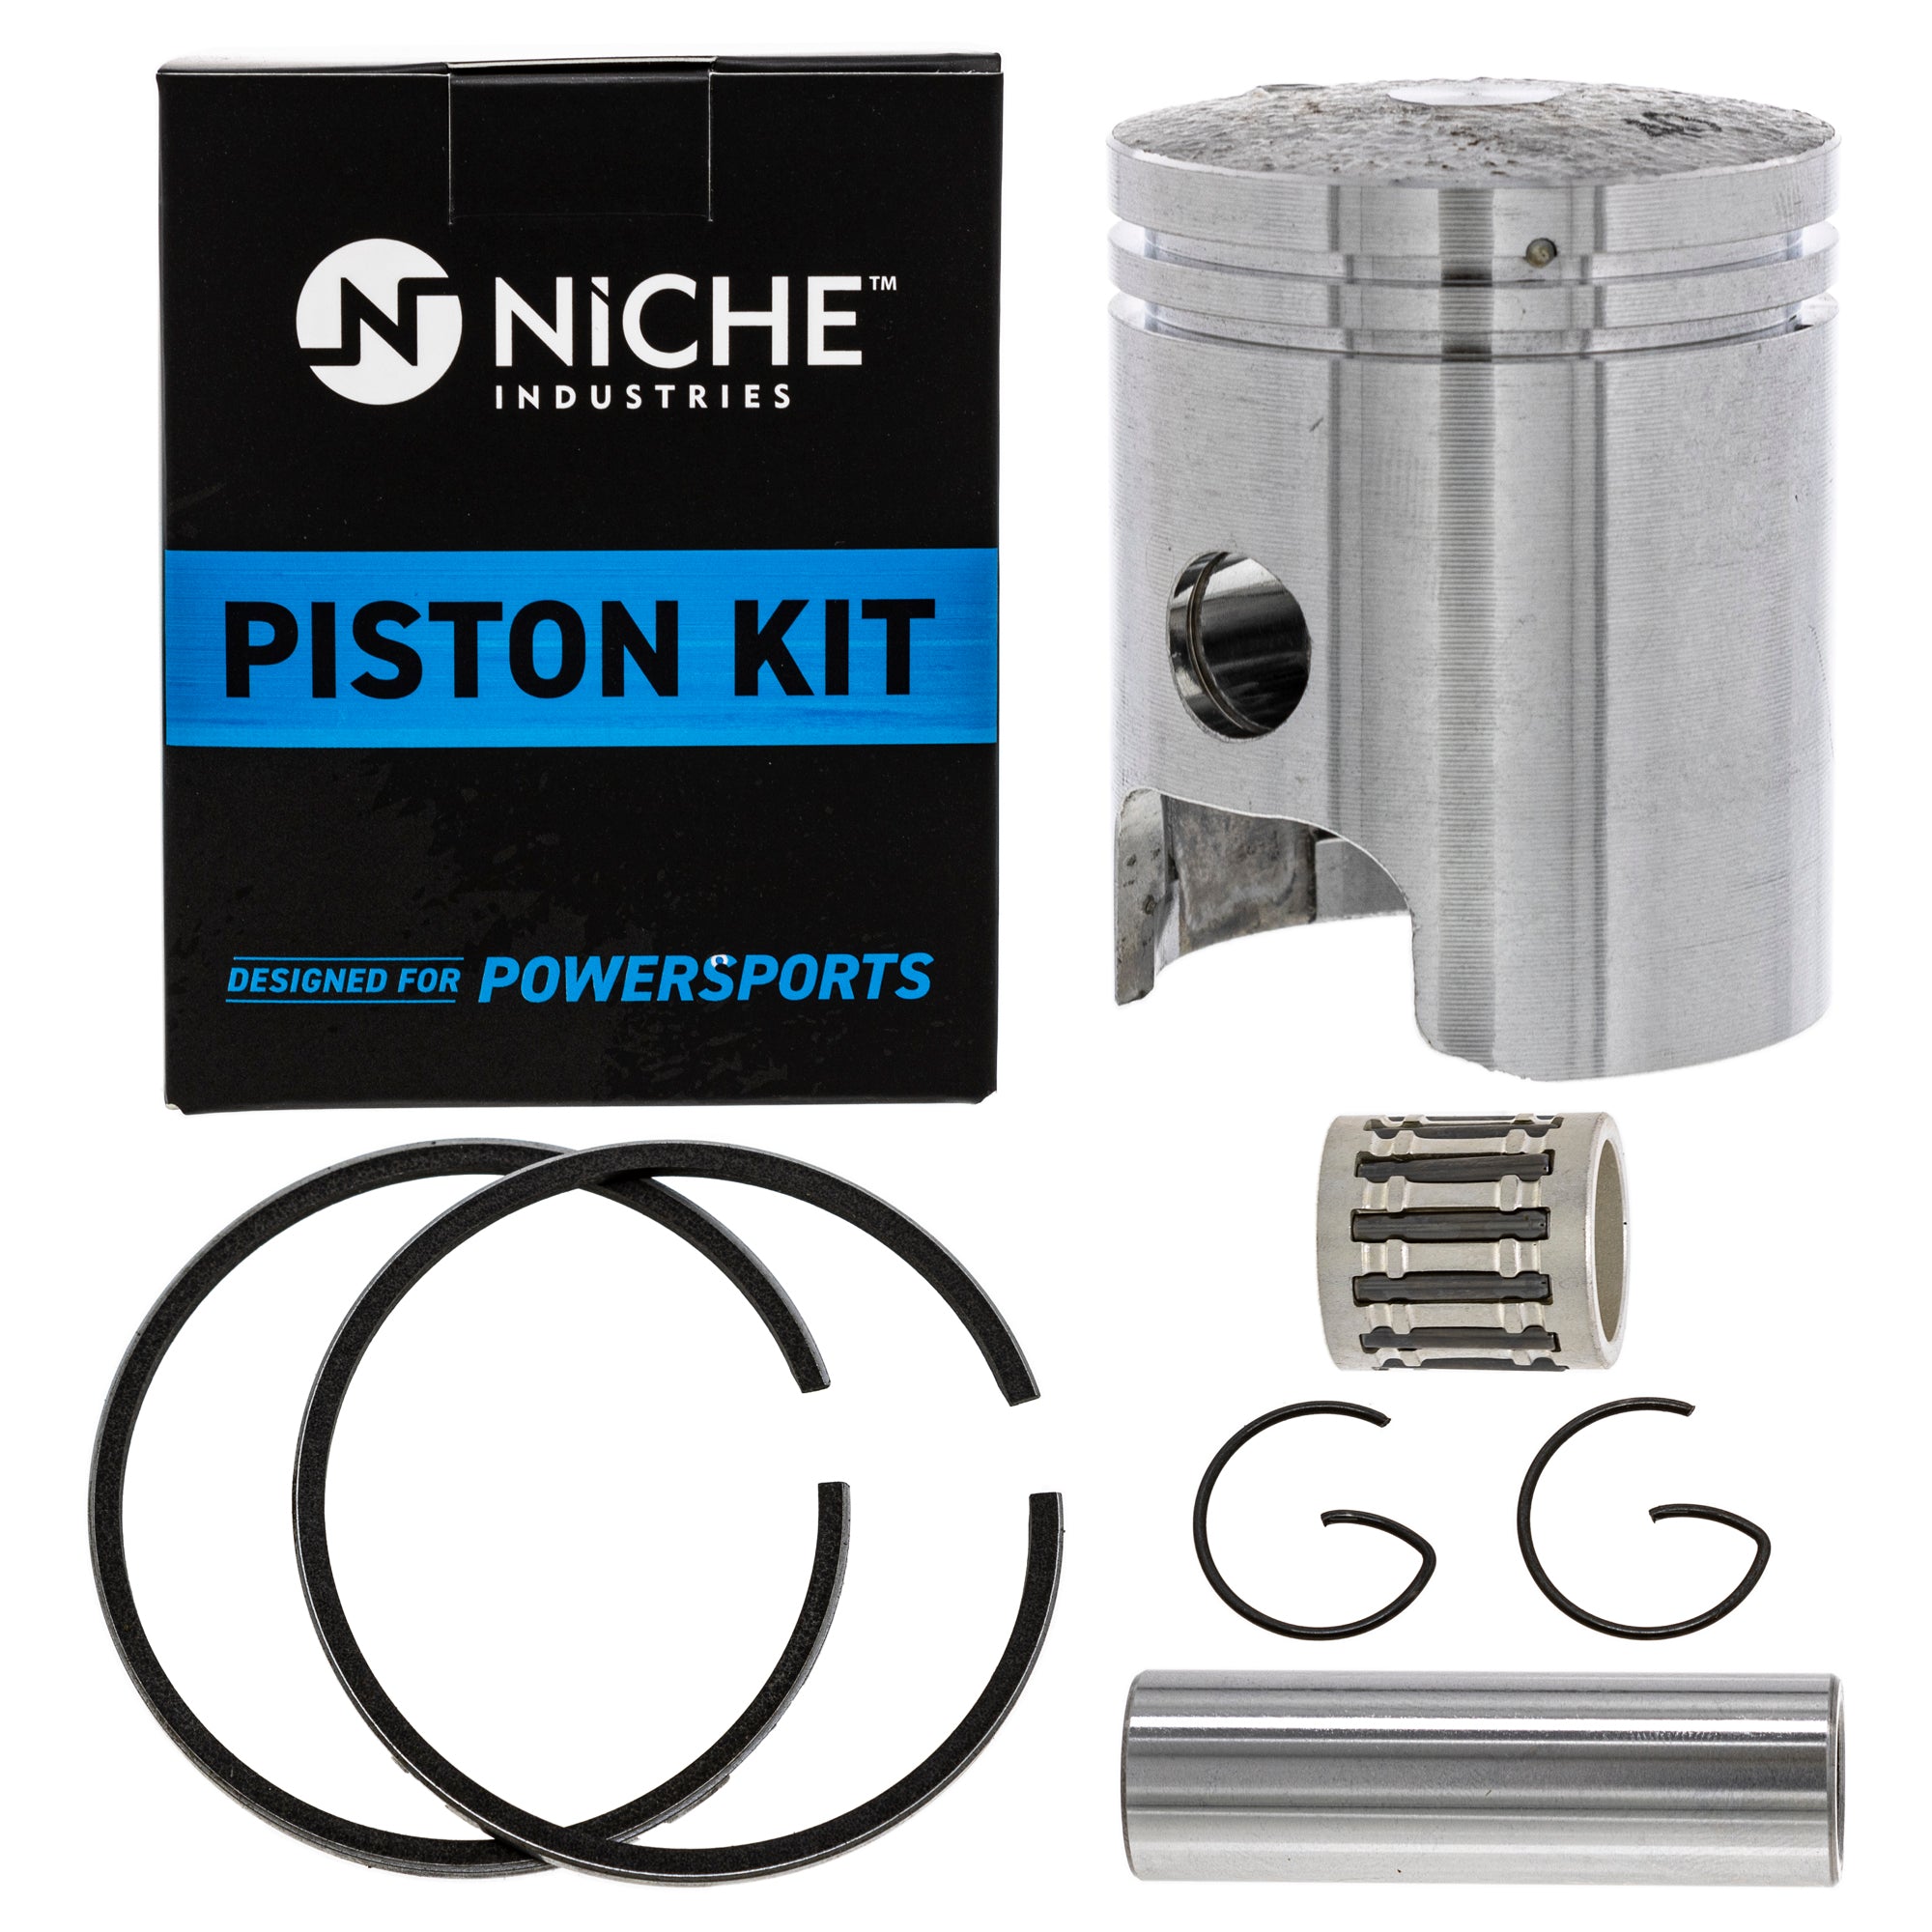 Piston Needle Bearing Wristpin Kit for Yamaha Towny QT50 PW50 Champ 260-11601-03-00 NICHE 519-KPS2223T